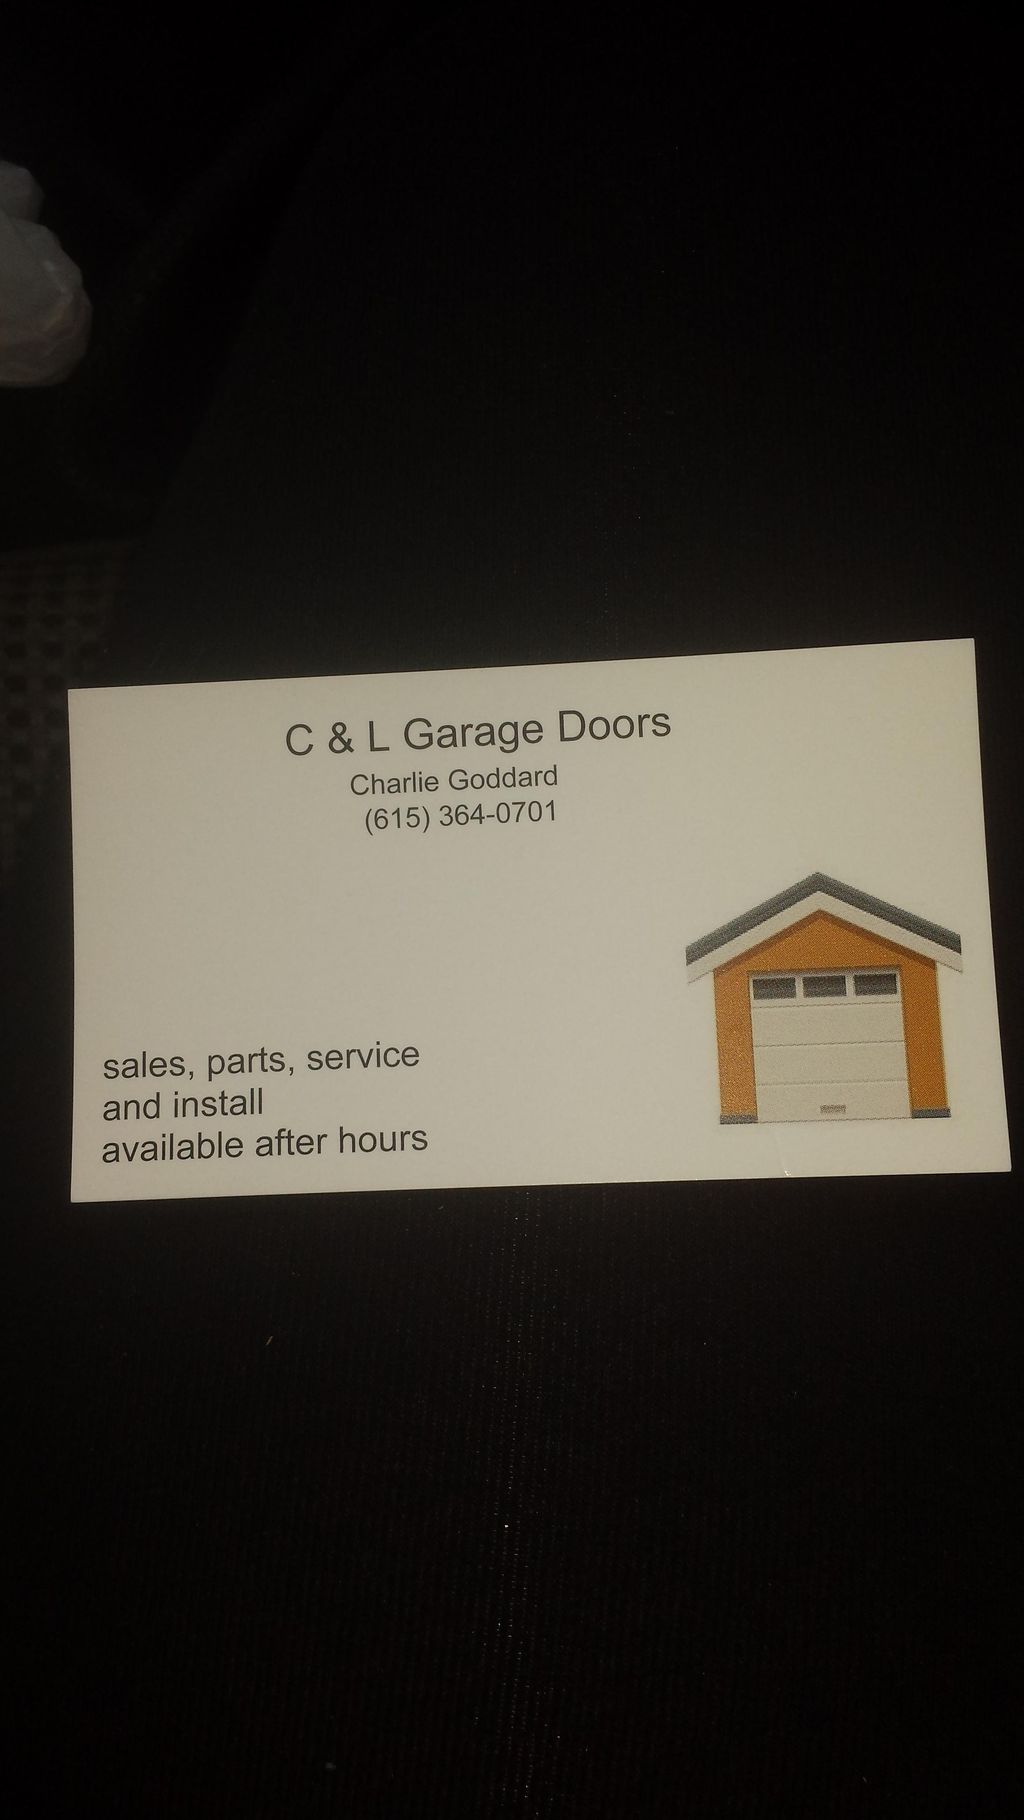 C&L Garage Doors